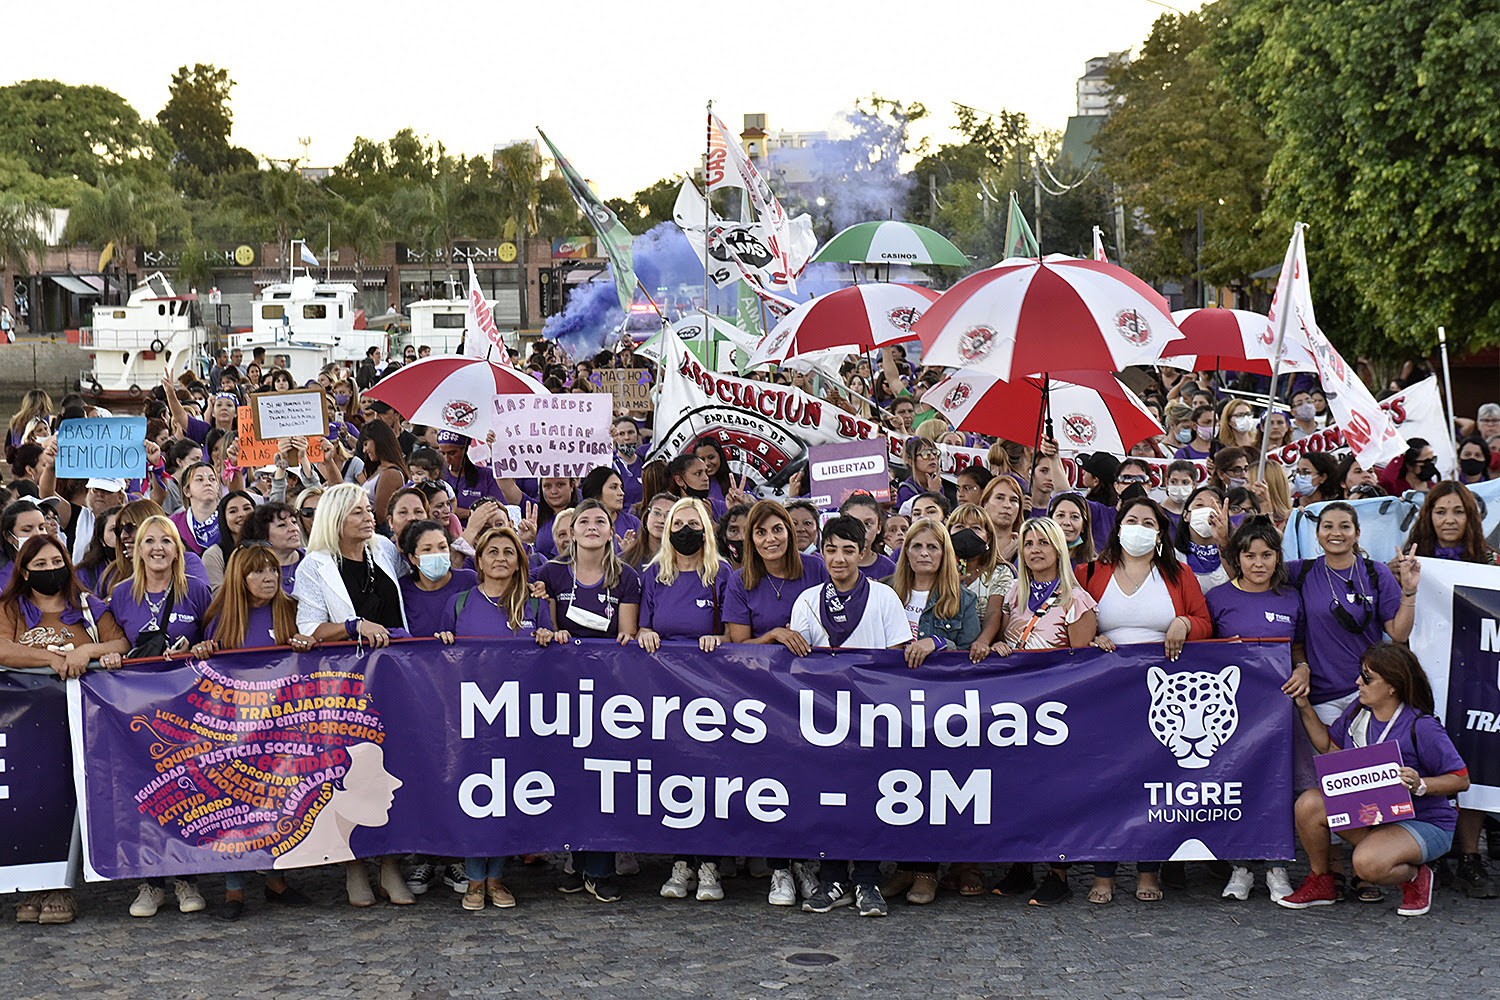 Gisela Zamora en el 8M: “Reivindicamos el compromiso de esta gestión para empoderar a las mujeres de Tigre y erradicar definitivamente la violencia de género”